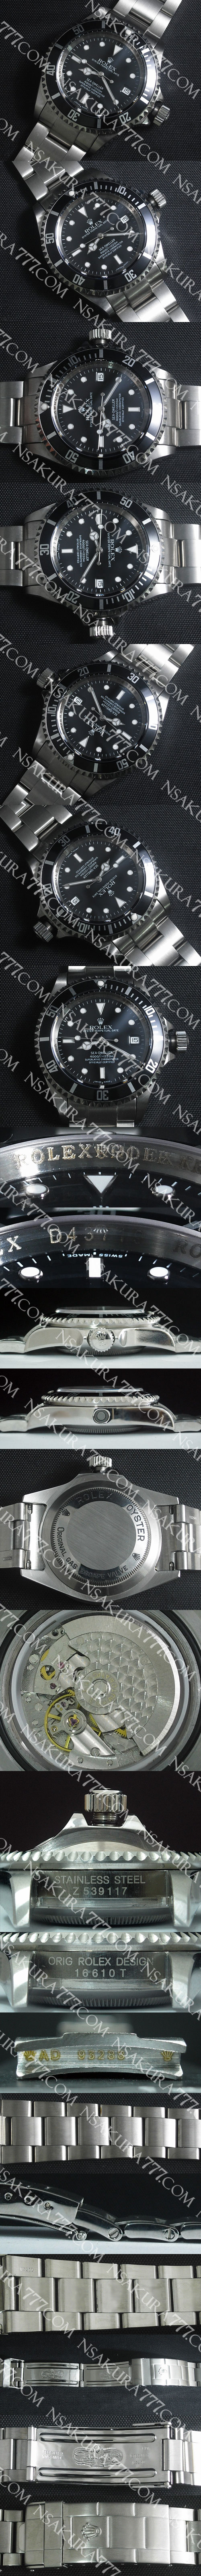 レプリカ時計ロレックス シードゥエラー Asian 21600振動 - ウインドウを閉じる